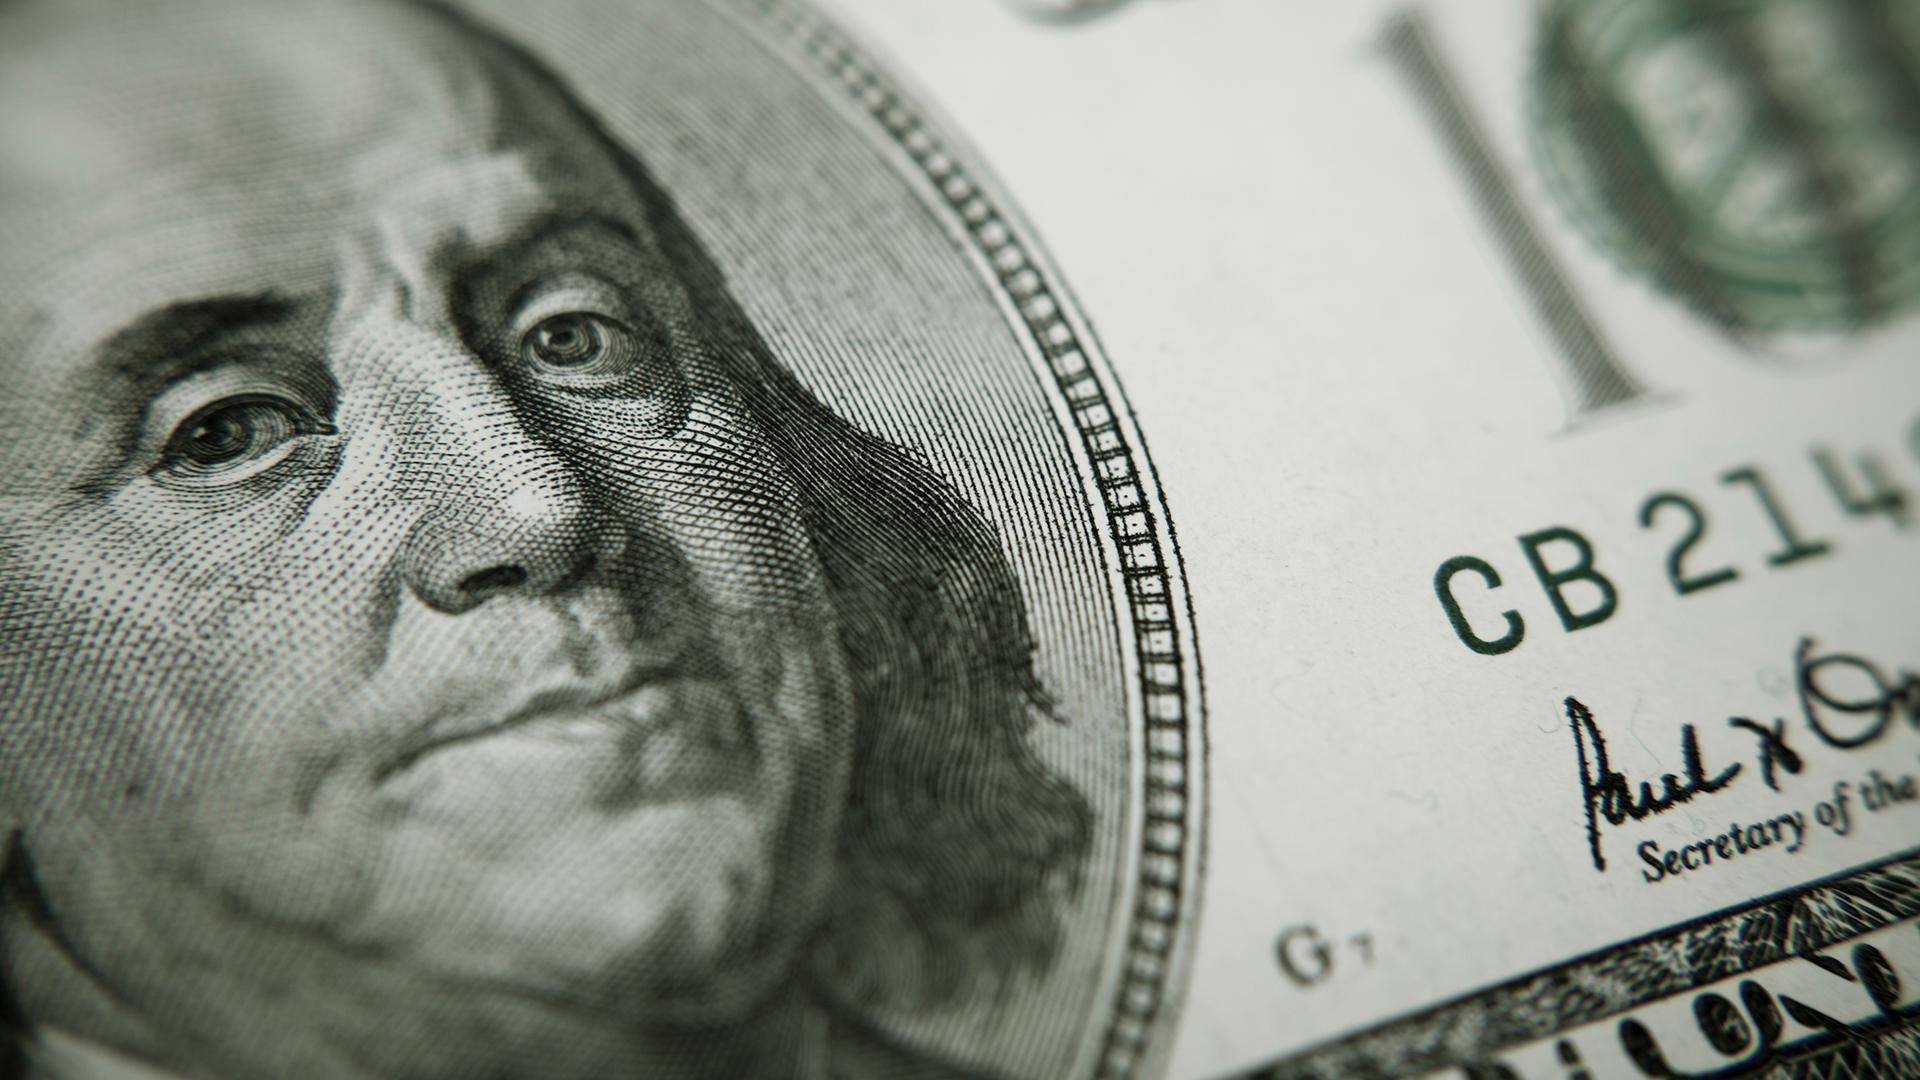 President Benjamin Franklin on 100 US dollar bill 